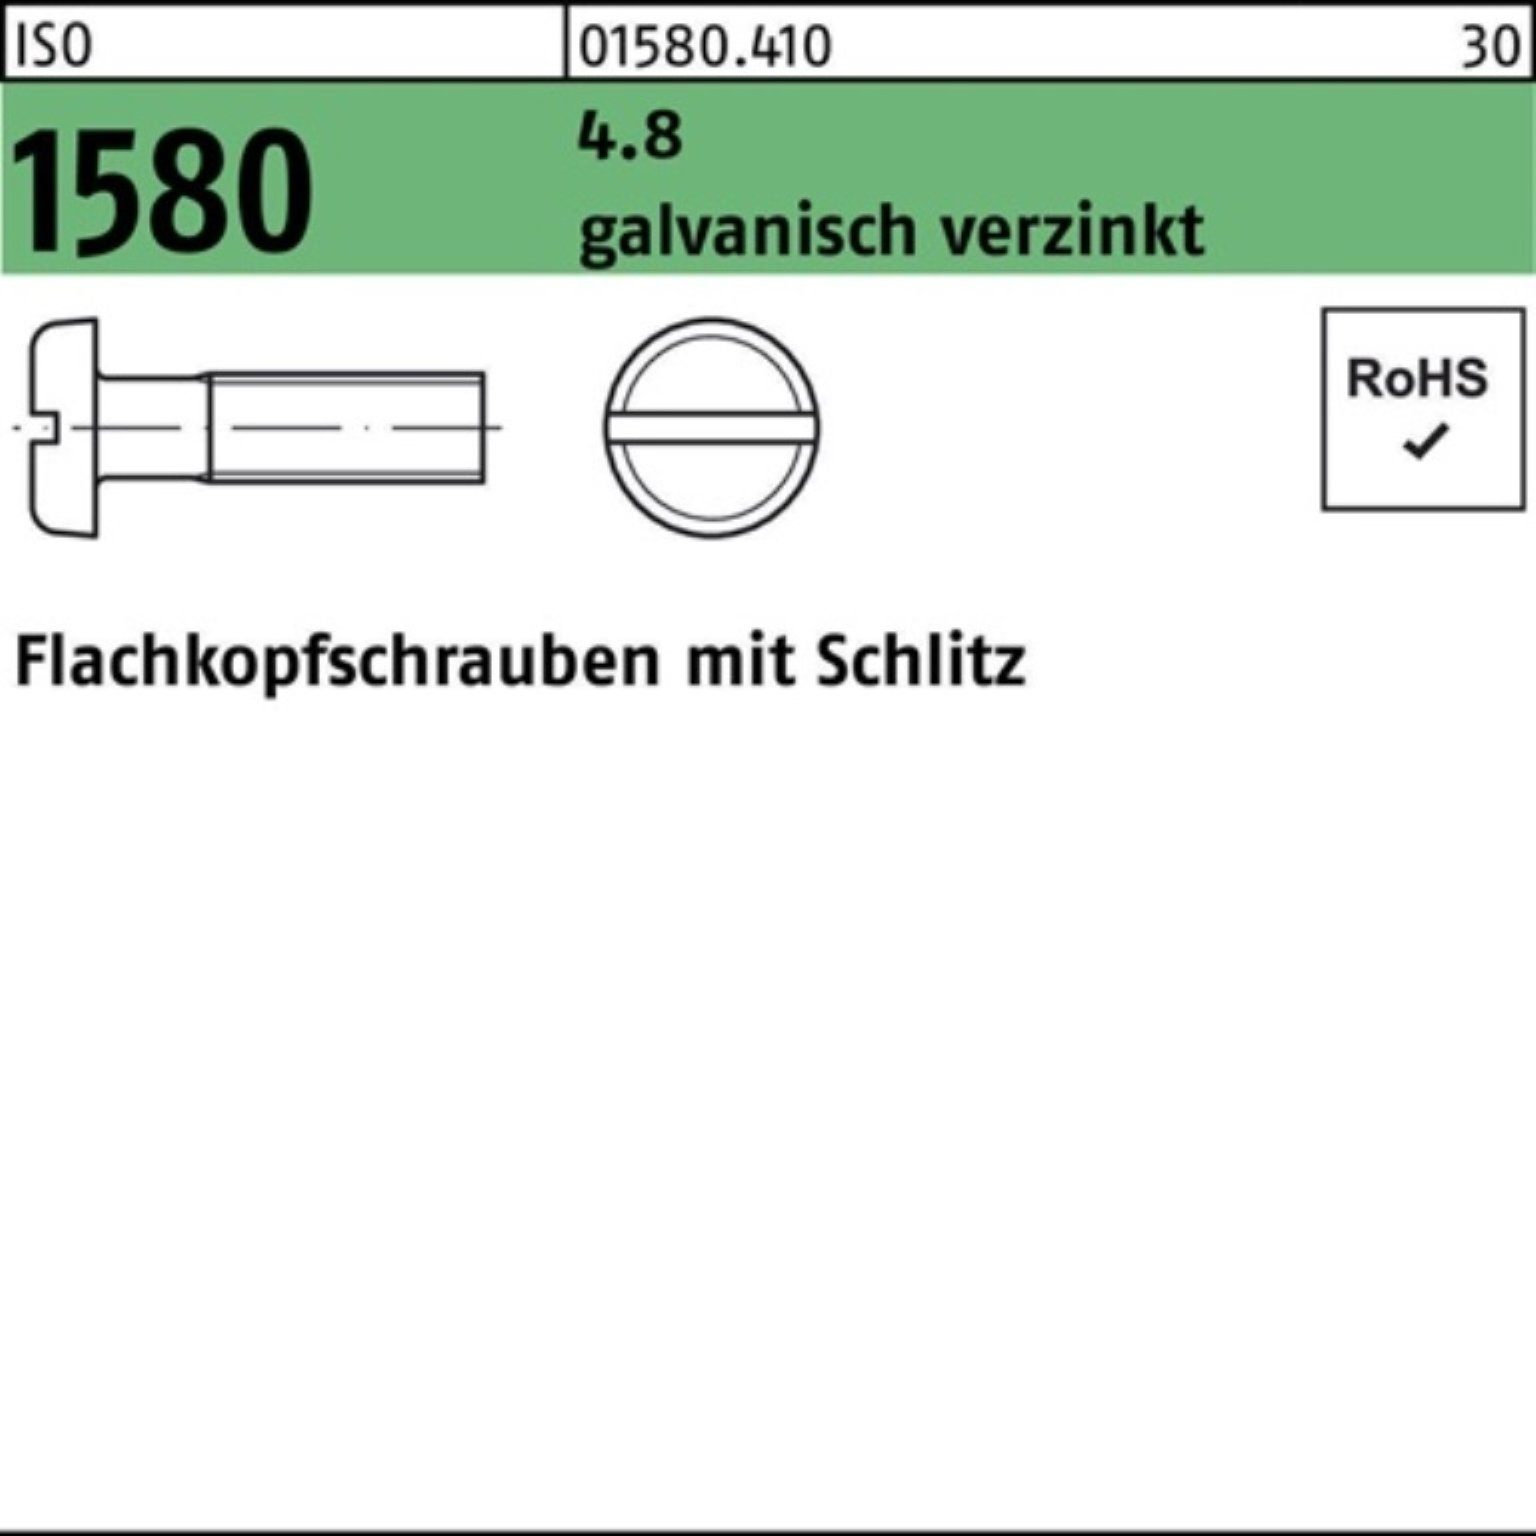 galv.verz. Reyher Flachkopfschraube 1580 1000er 4.8 M6x 16 Schlitz Pack 1 Schraube ISO